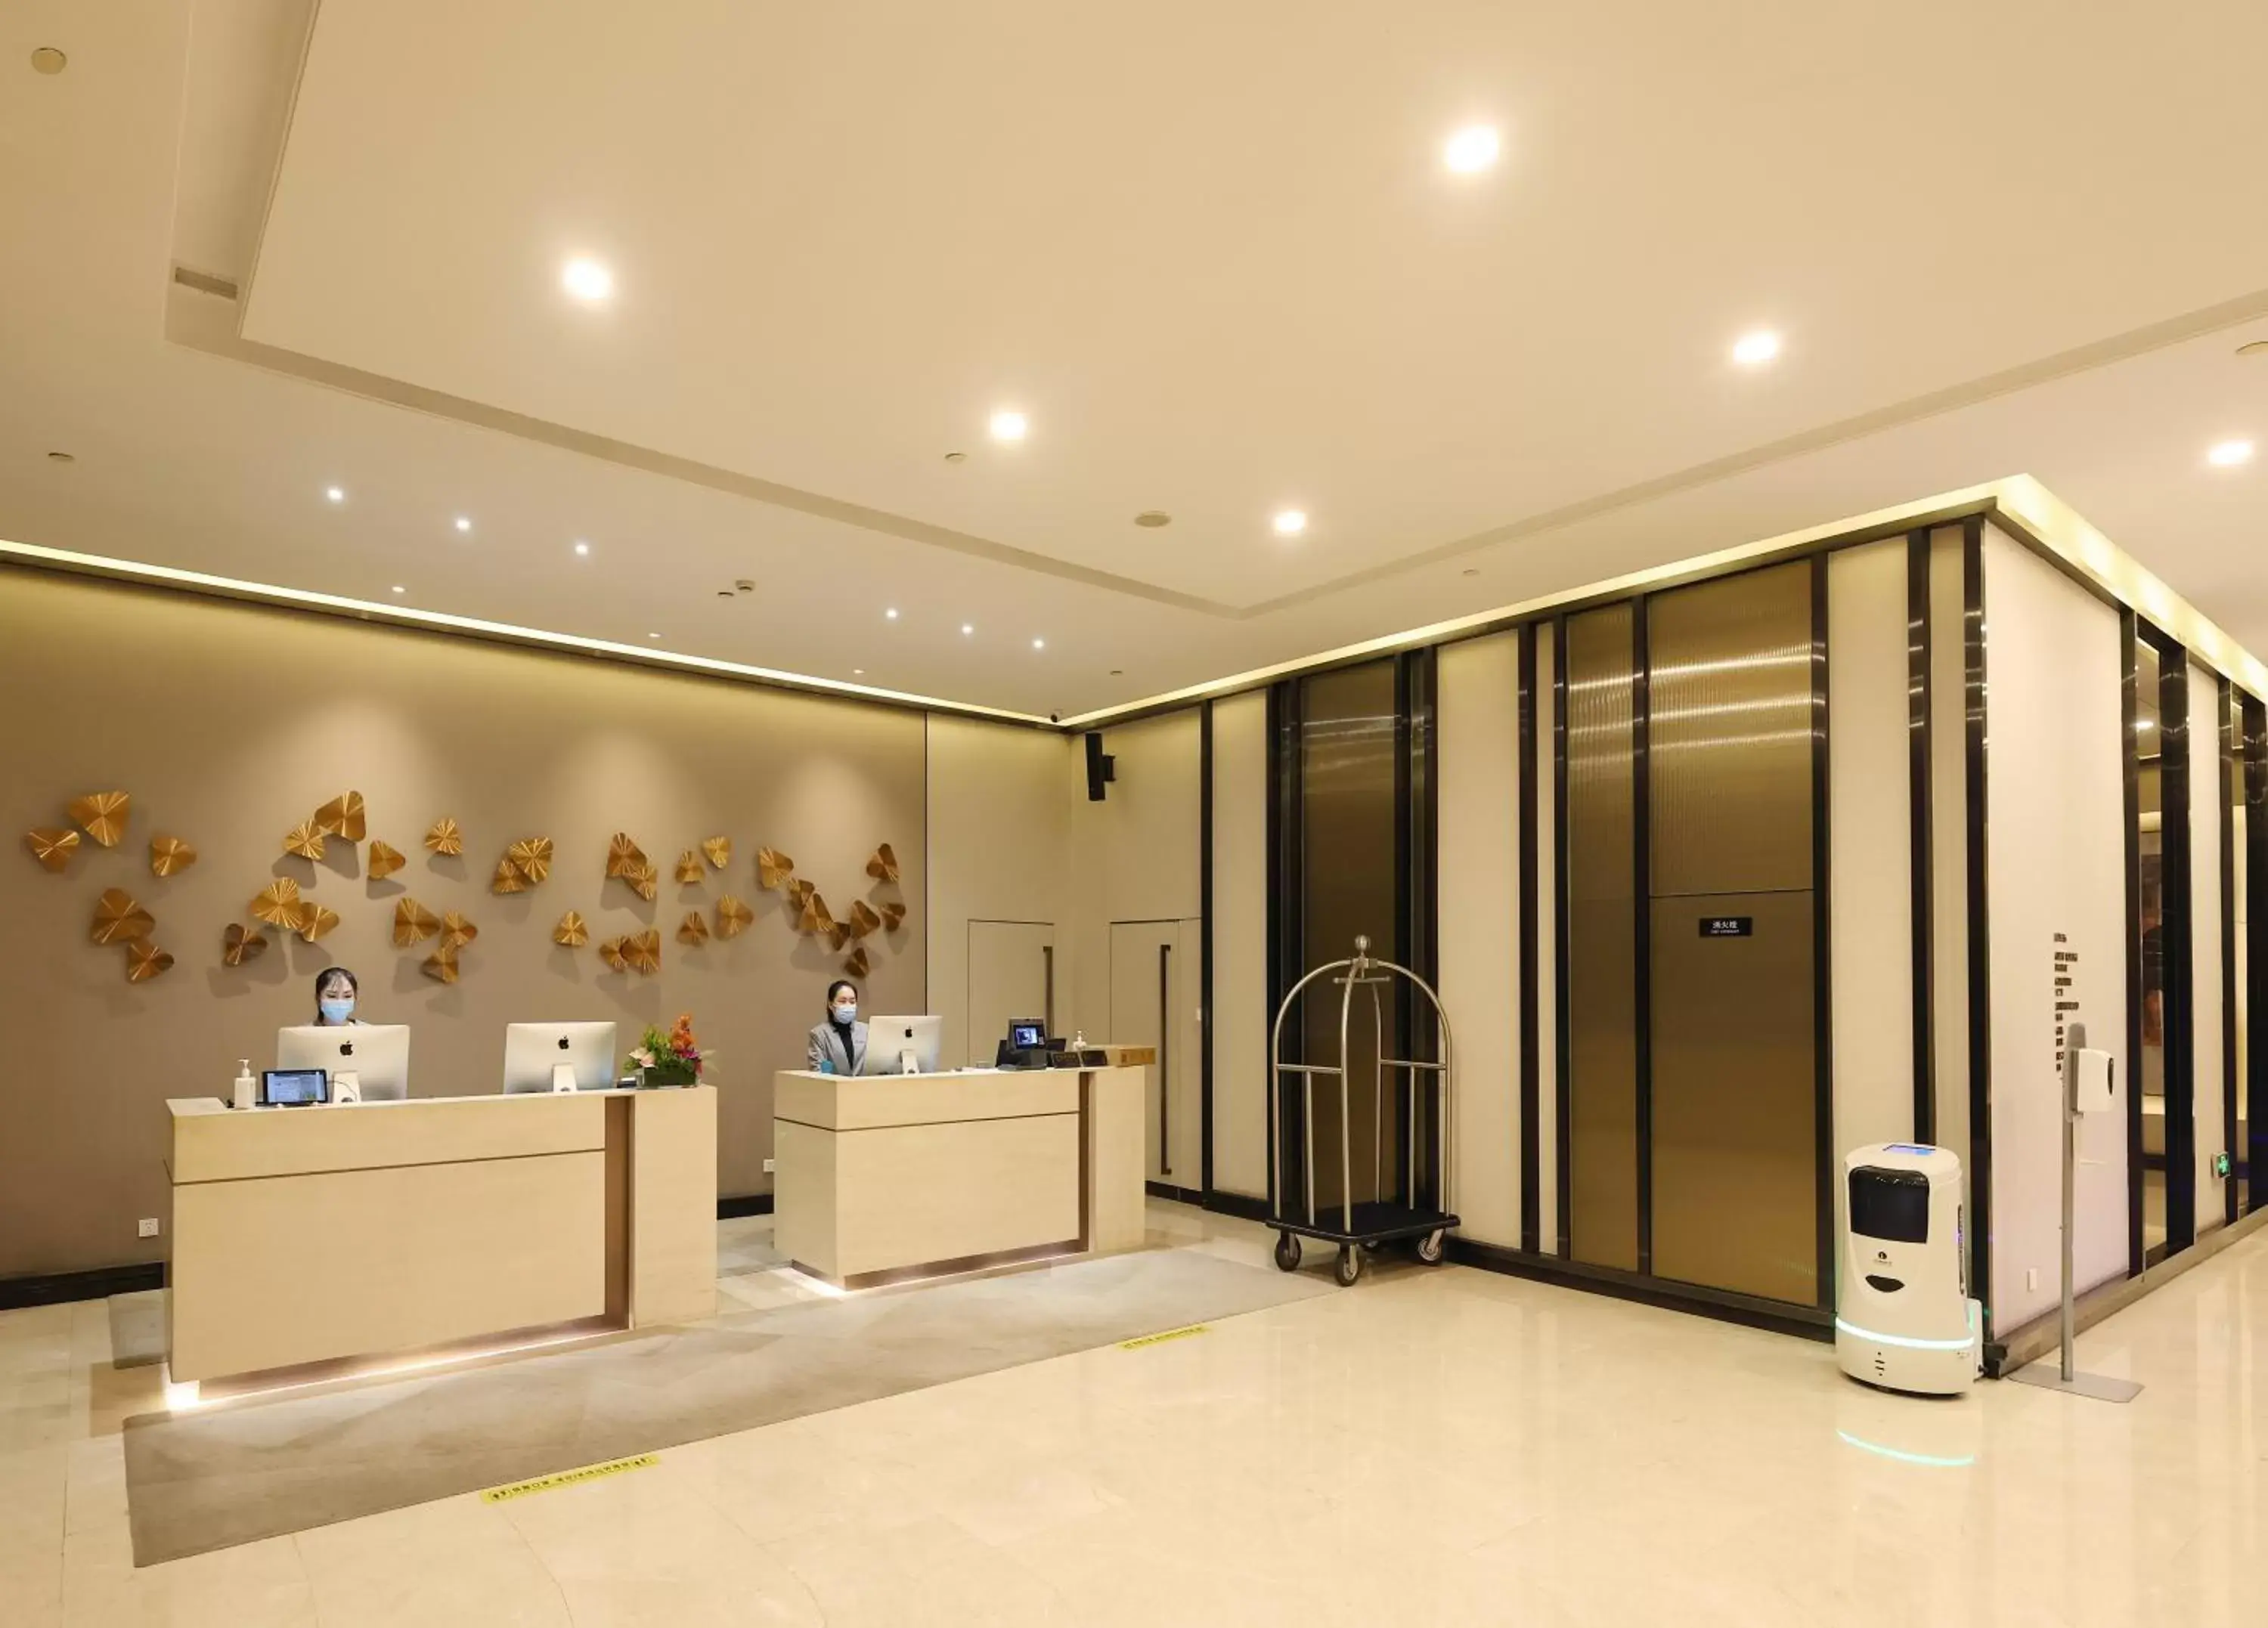 Lobby or reception in Fraser Residence Shanghai